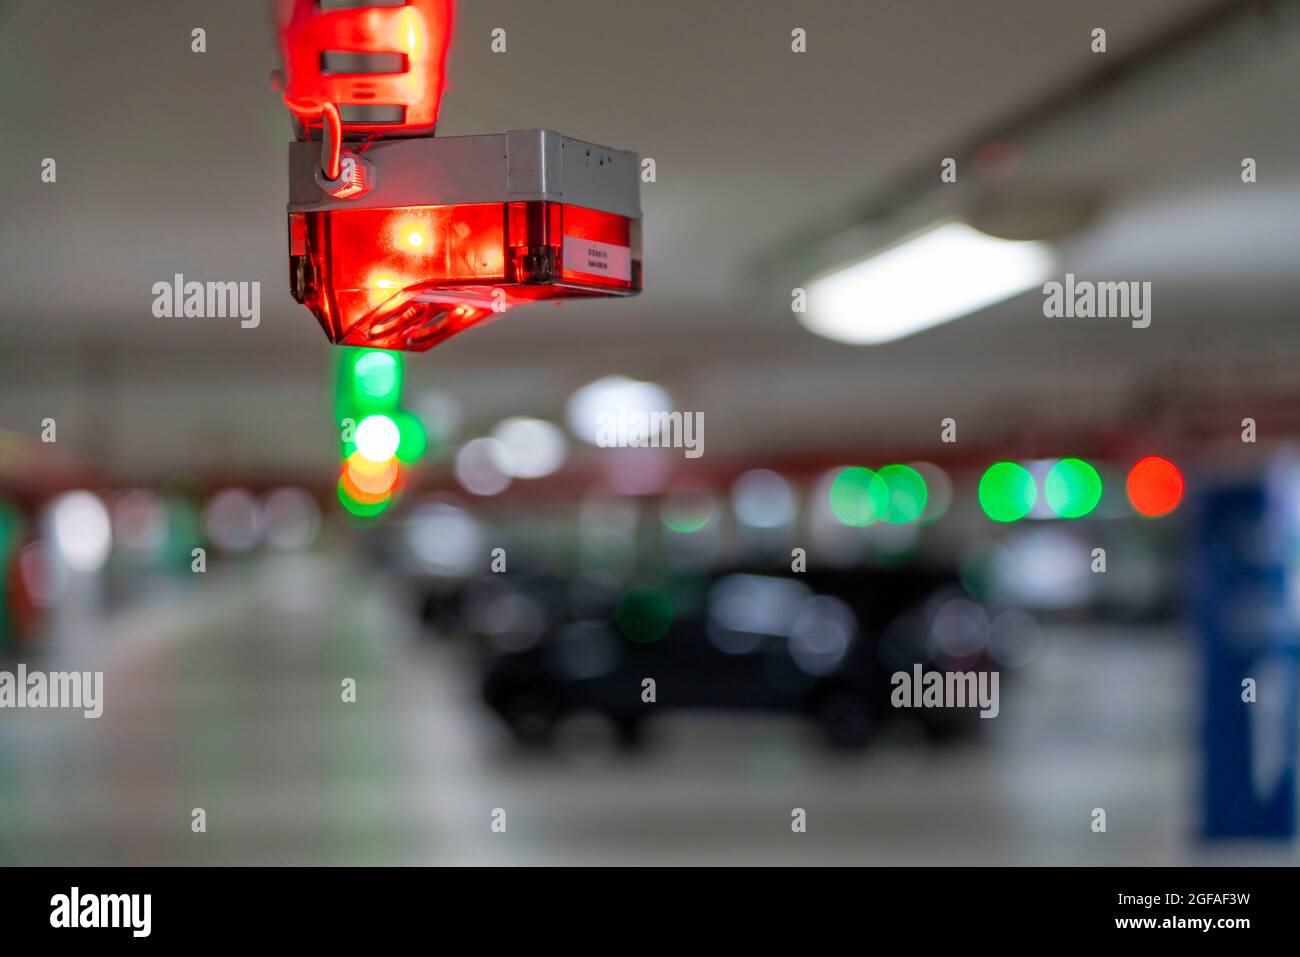 Tiefgaragen, Parkplätze, rote oder grüne Lichter an der Decke zeigen dem Fahrer, ob ein Parkplatz frei oder belegt ist und messen somit auch t Stockfoto